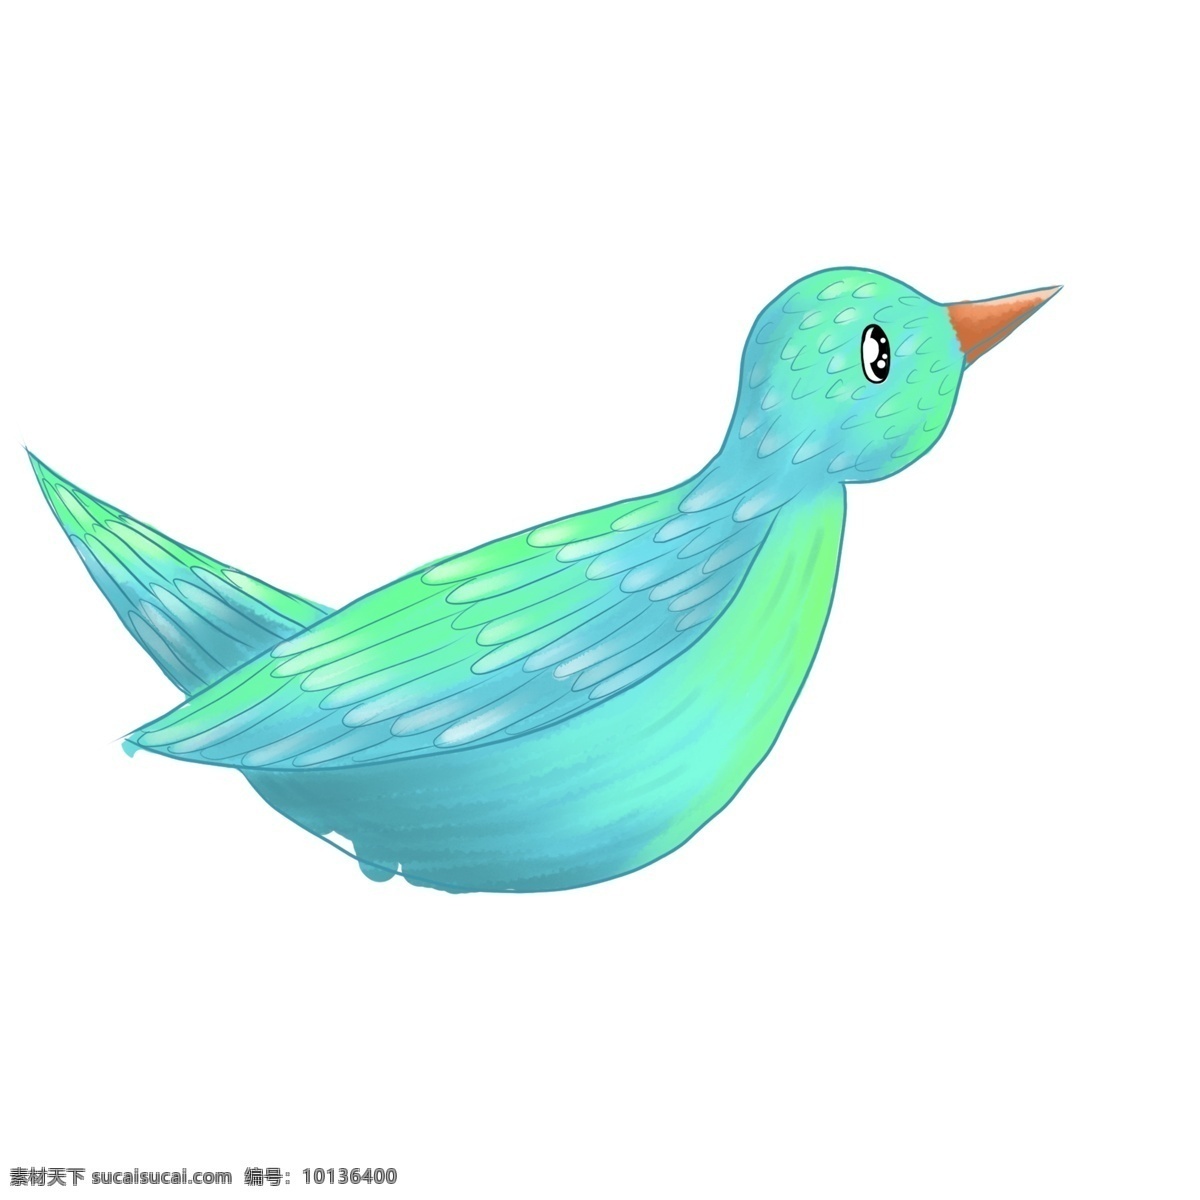 卡通 只 蓝色 小鸟 清新 彩绘 水彩绘 插画 动物 一只鸟